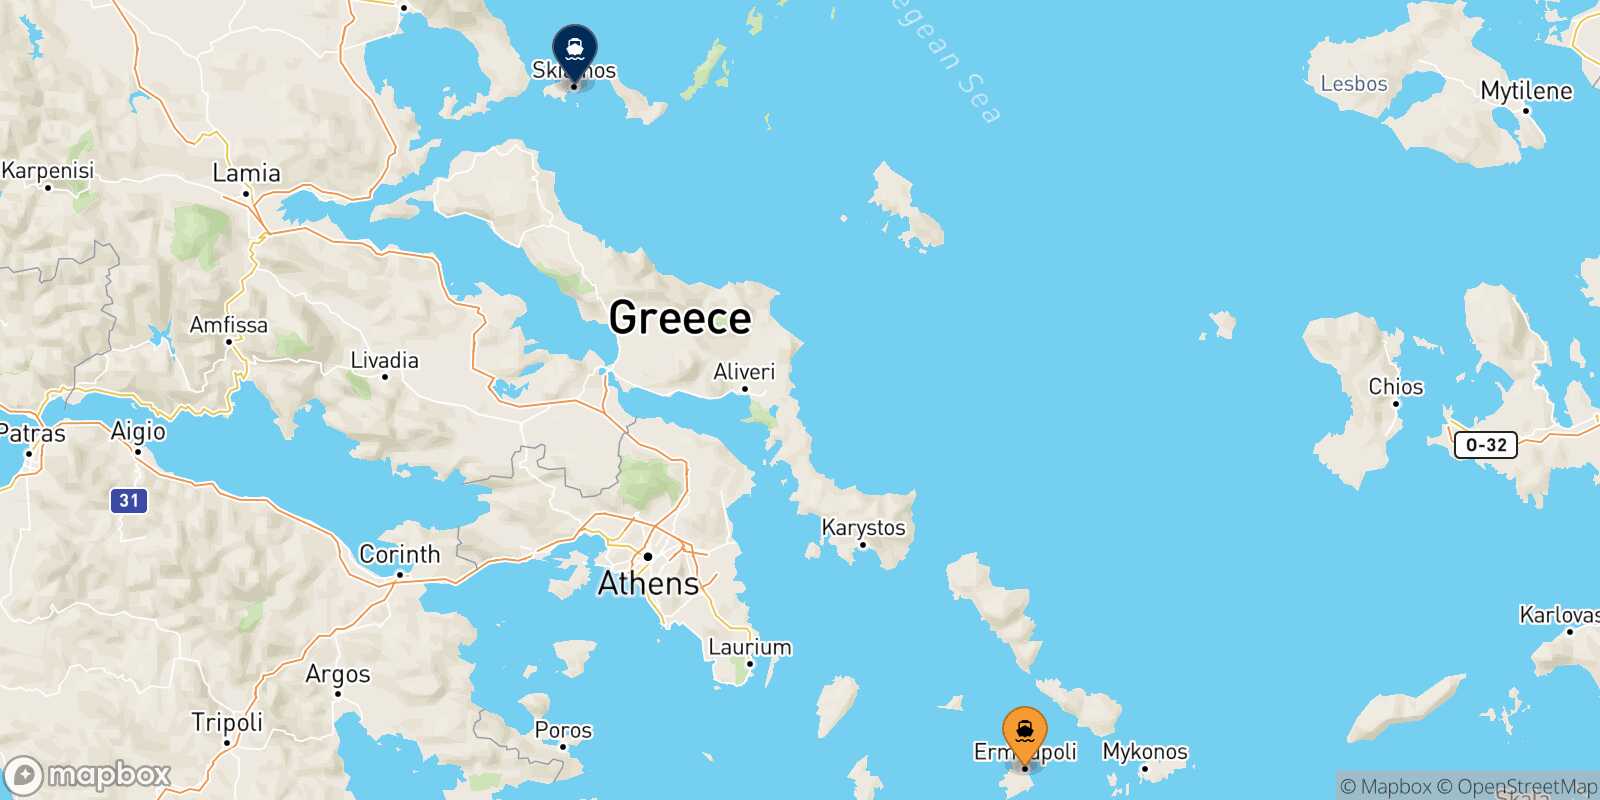 Syros Skiathos route map